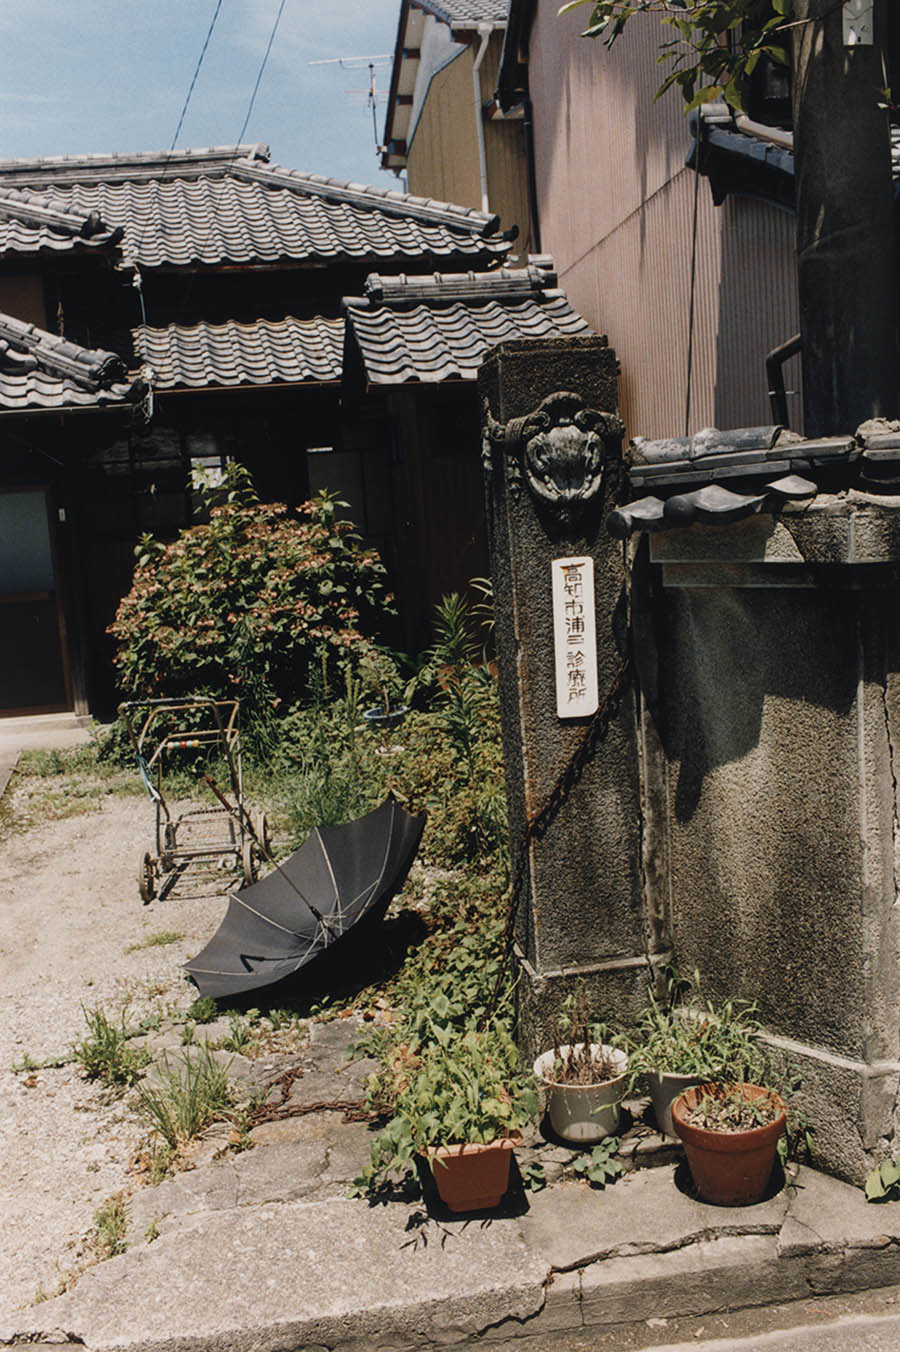 日本城市农村风光黑白纪实观念艺术摄影参考图库素材，摄影师尾仲浩二作品集欣赏